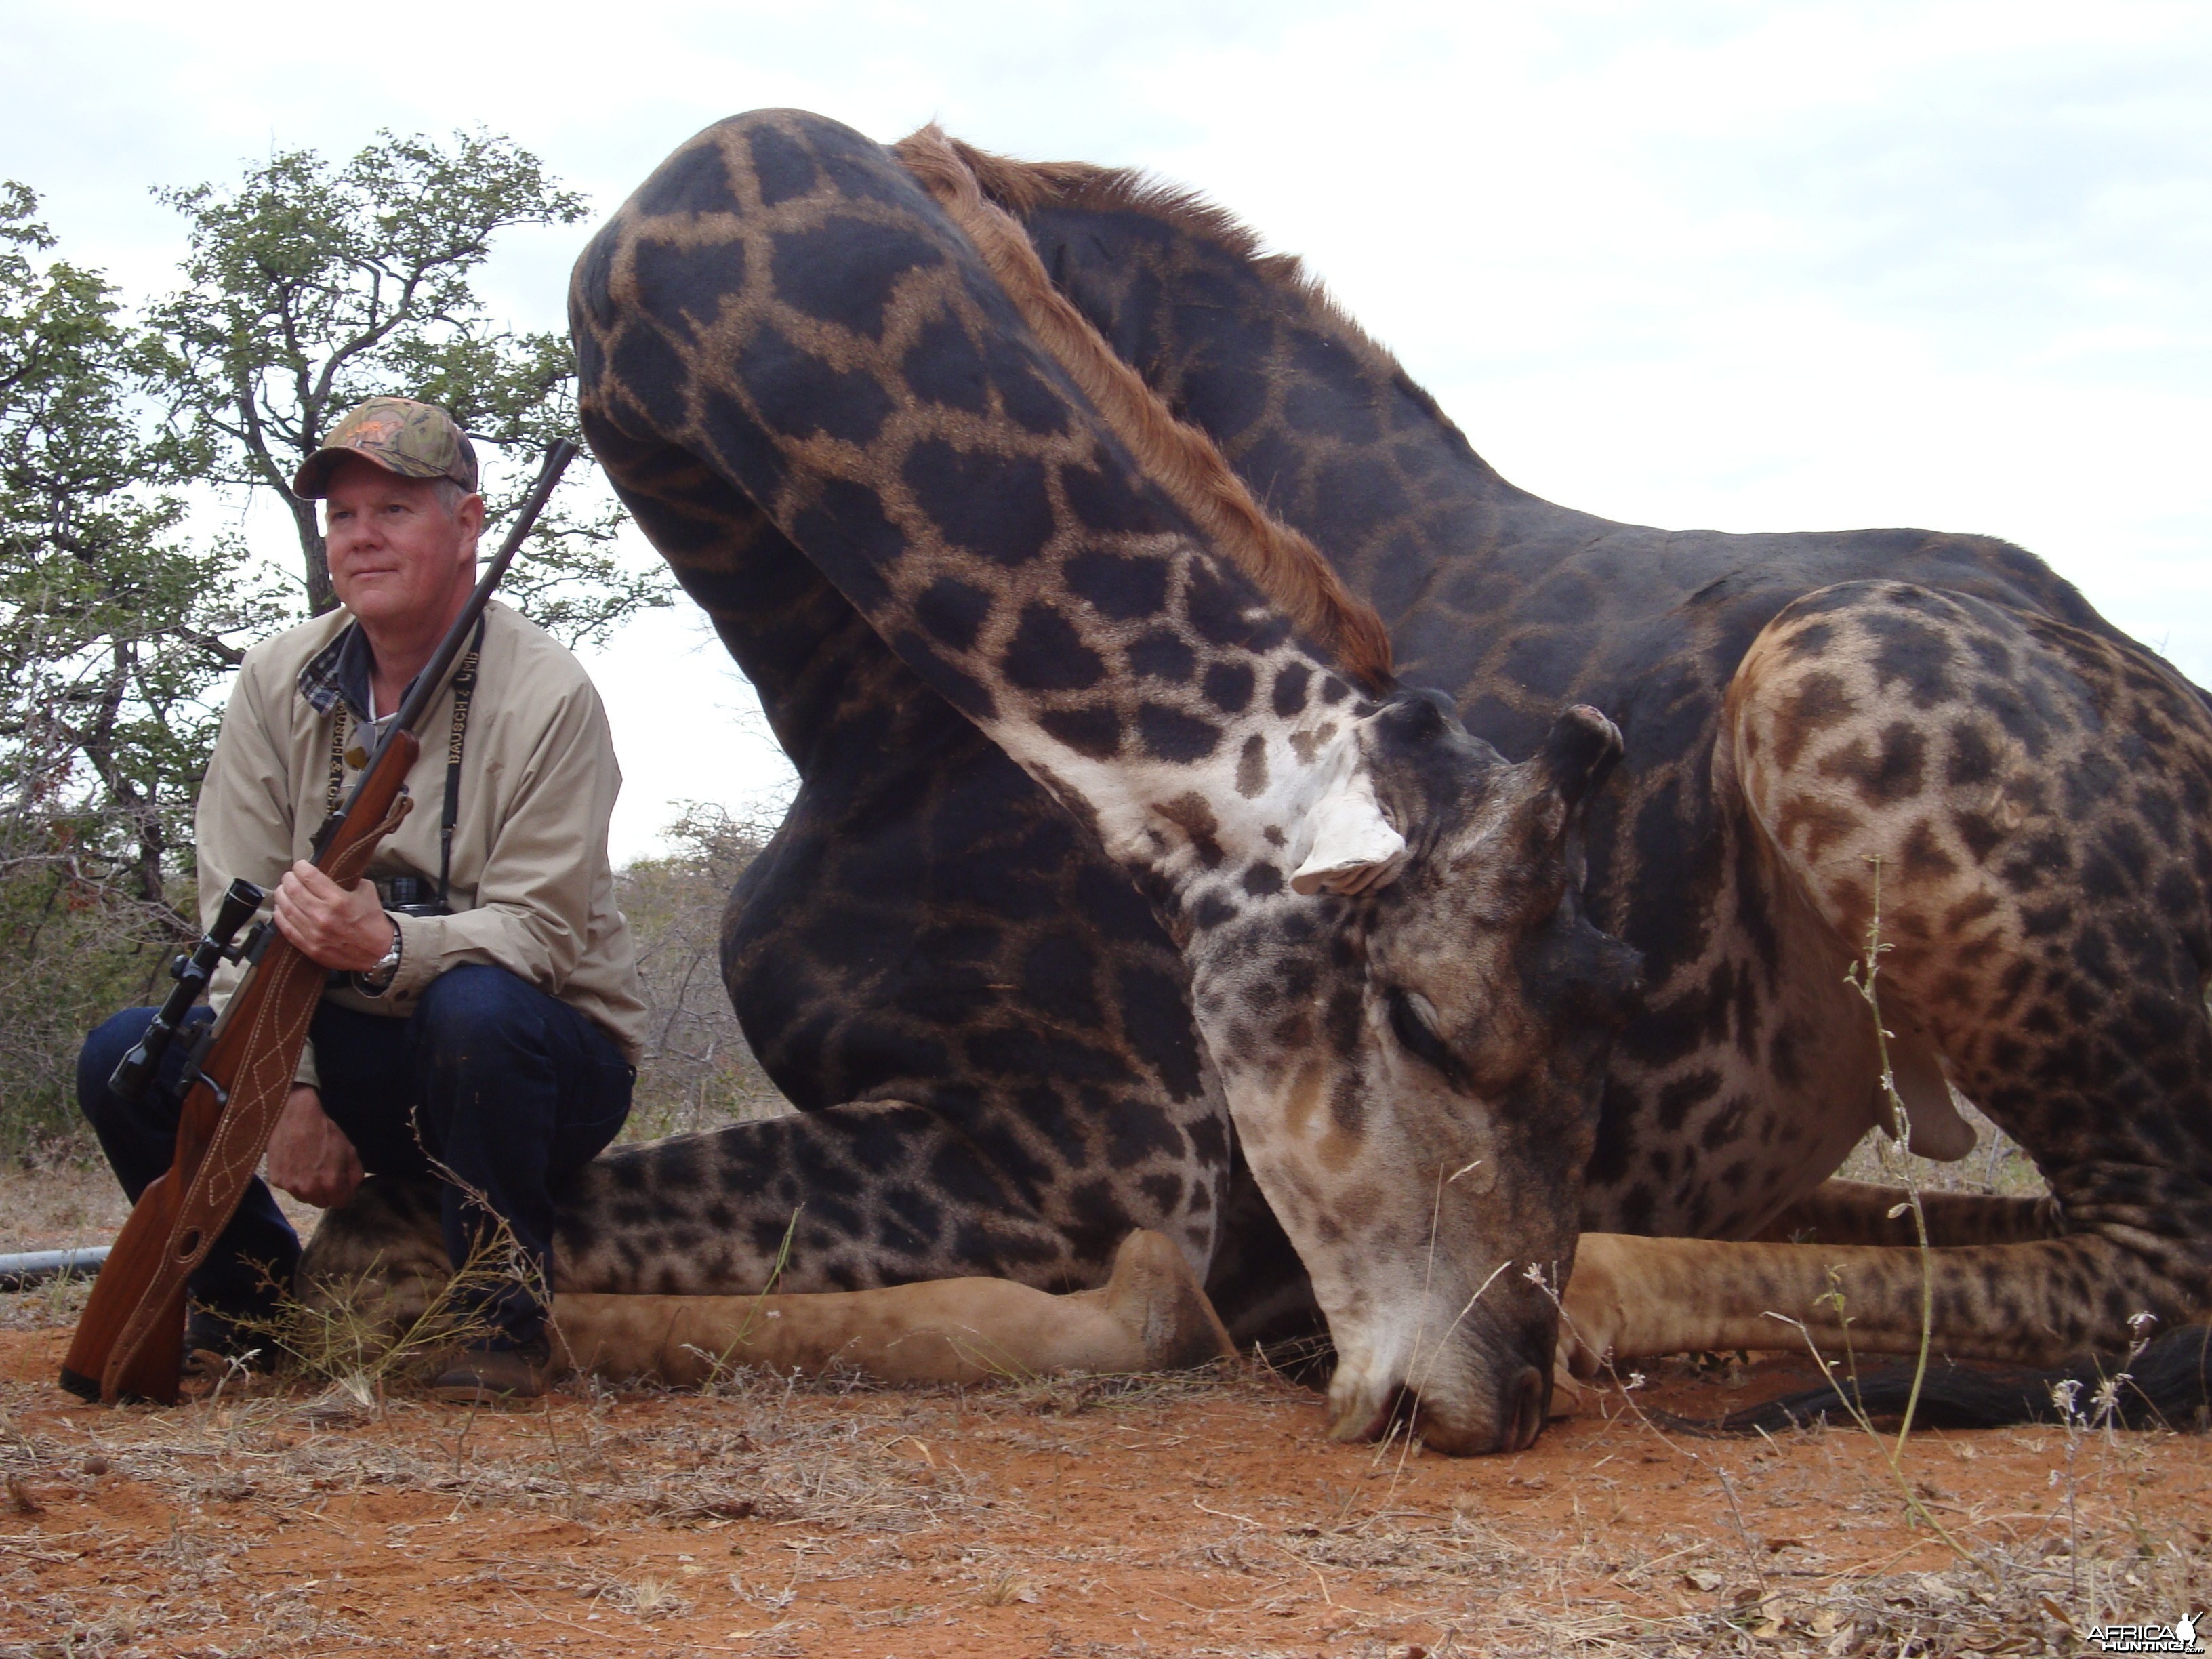 Giraffe hunted with Lianga Safaris